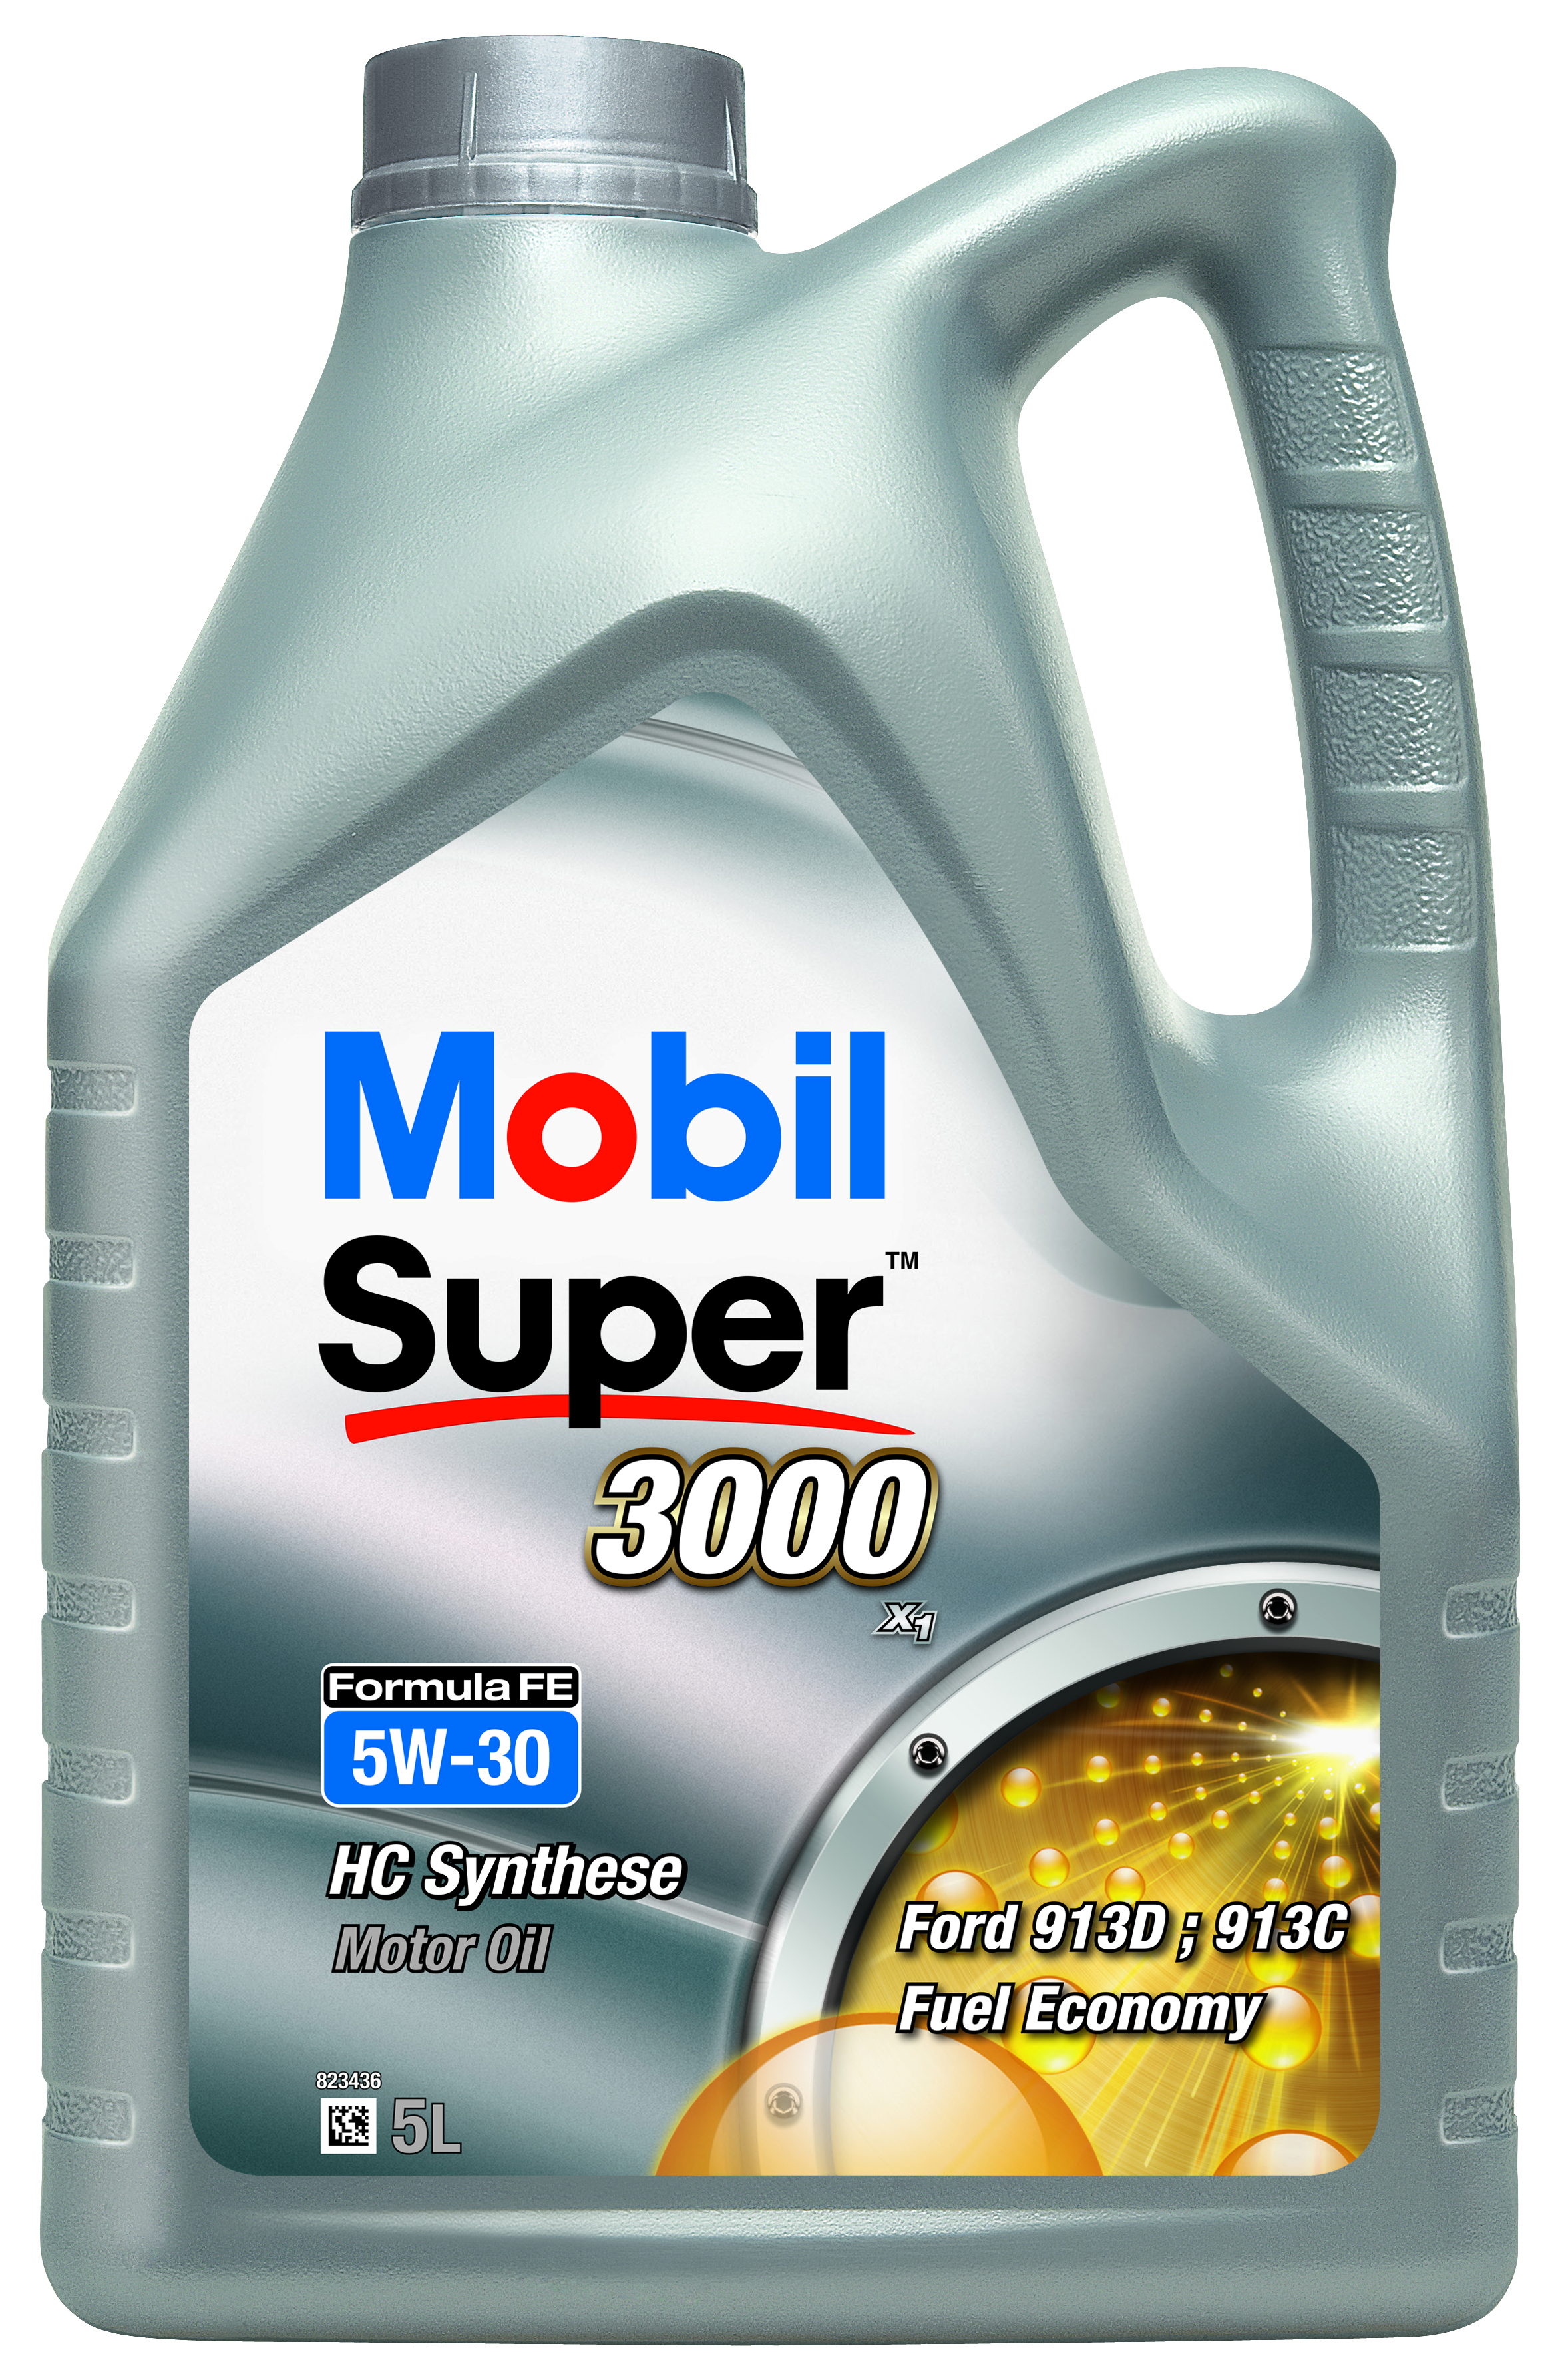 Mobil Super 3000 Formula FE 5W-30 5L